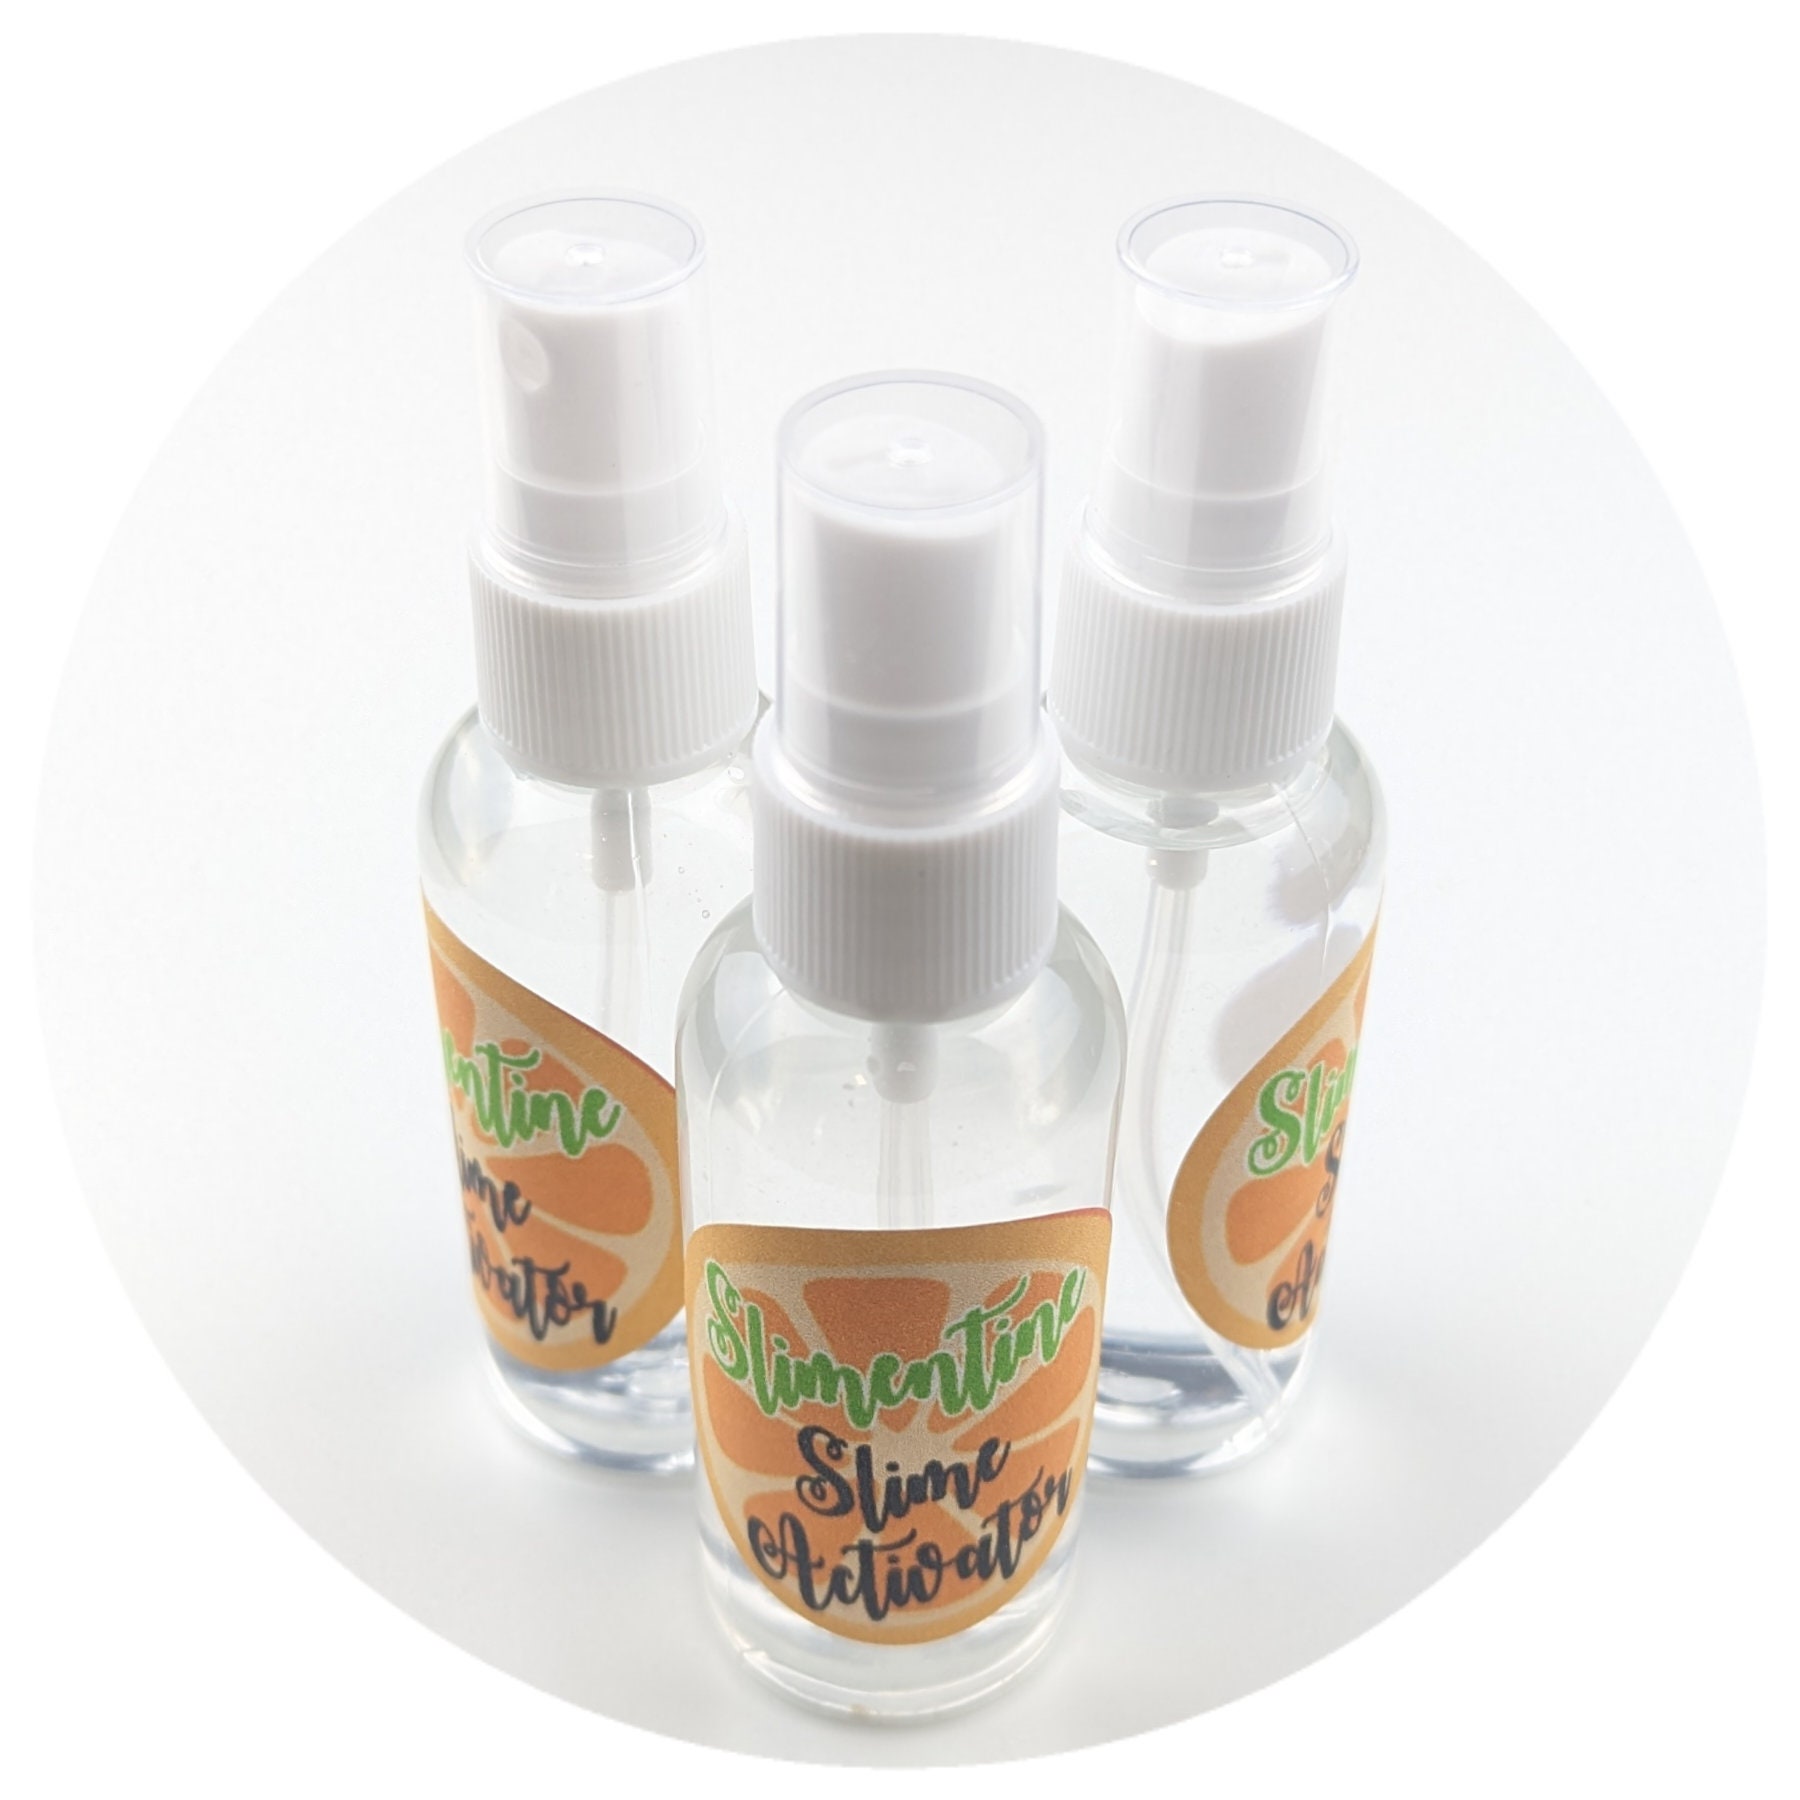 Elmer’s Glue Slime Magical Liquid Activator Solution; 8.75 fl. oz. Bottle;  Homemade Slime, Paper Crafts, Art Work, School, Kids Crafts